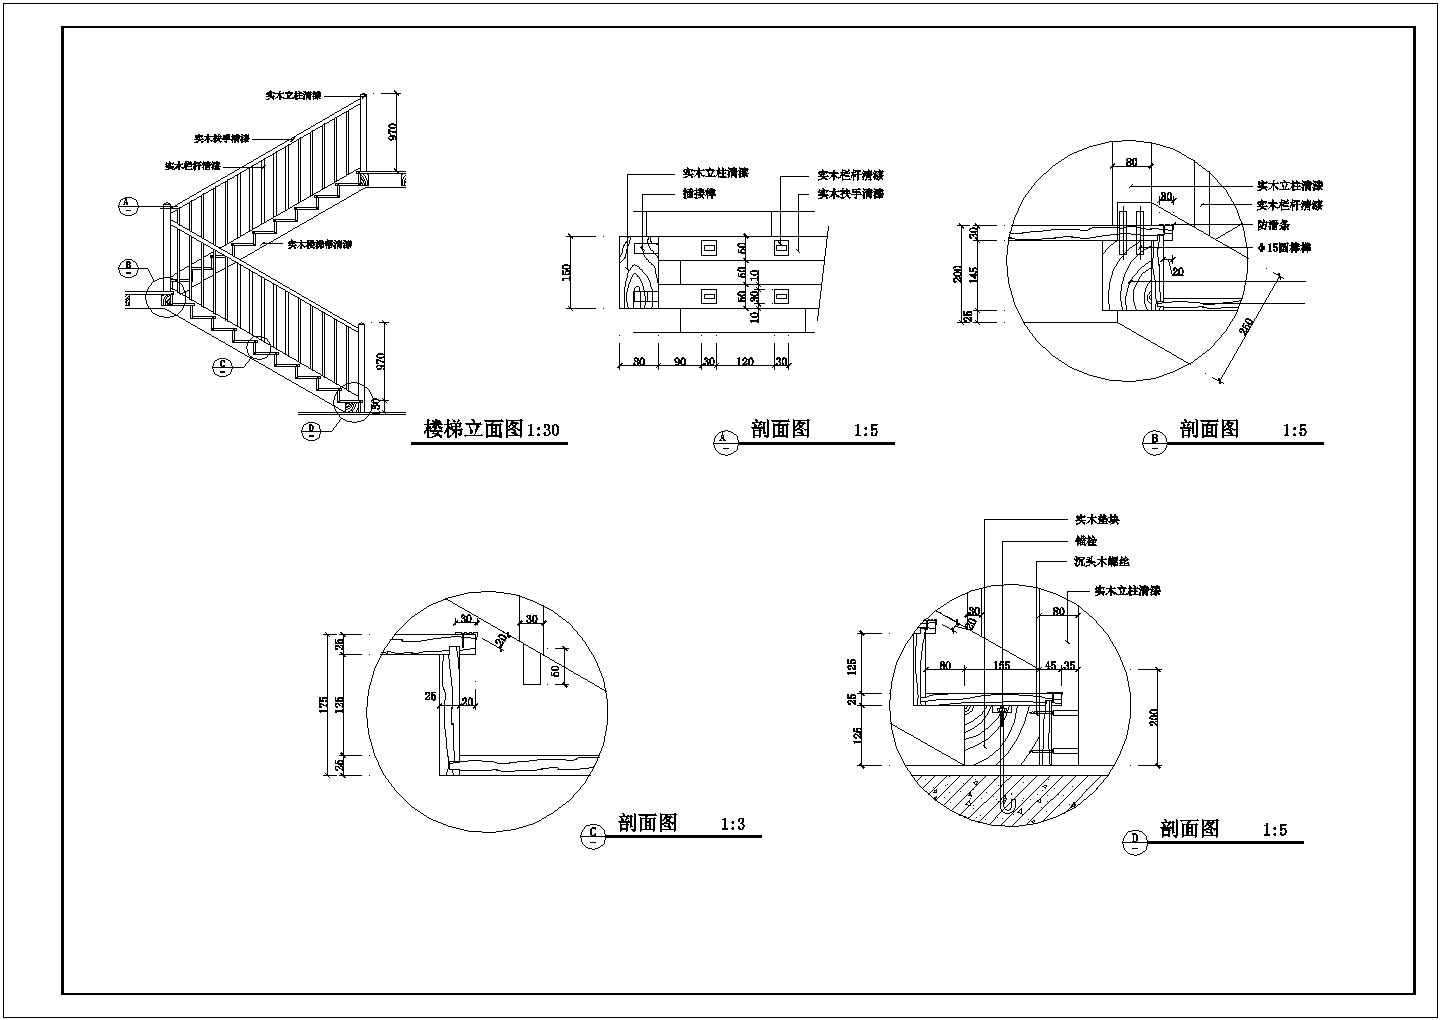 南京阳光咖啡吧全套装修施工设计cad图(含各层平面图)